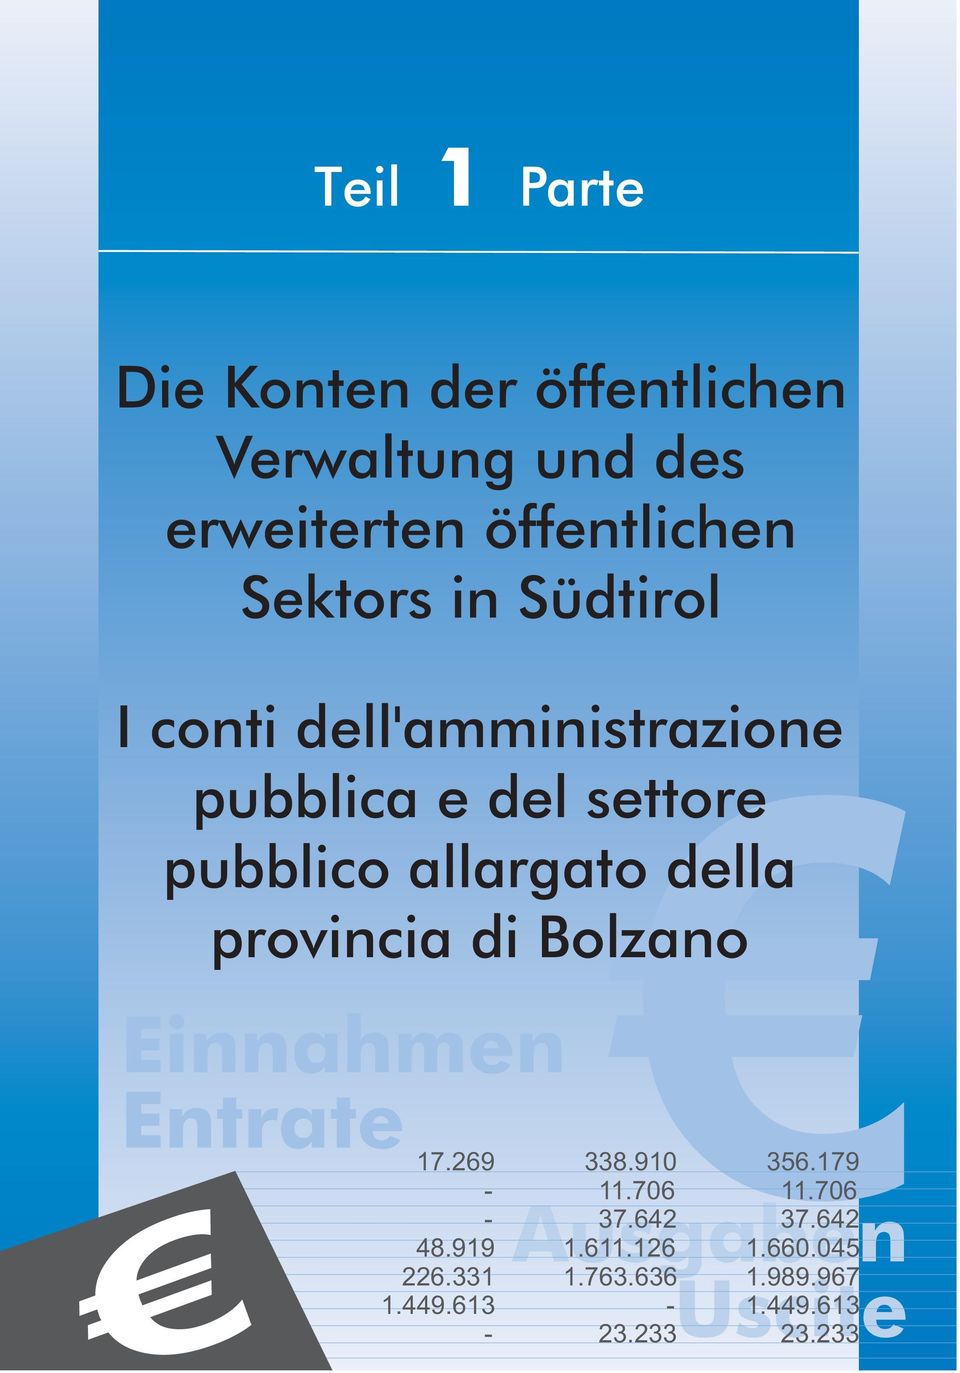 provincia di Bolzano Einnahmen Entrate 17.269 338.910 356.179-11.706 11.706 - Ausgaben 37.